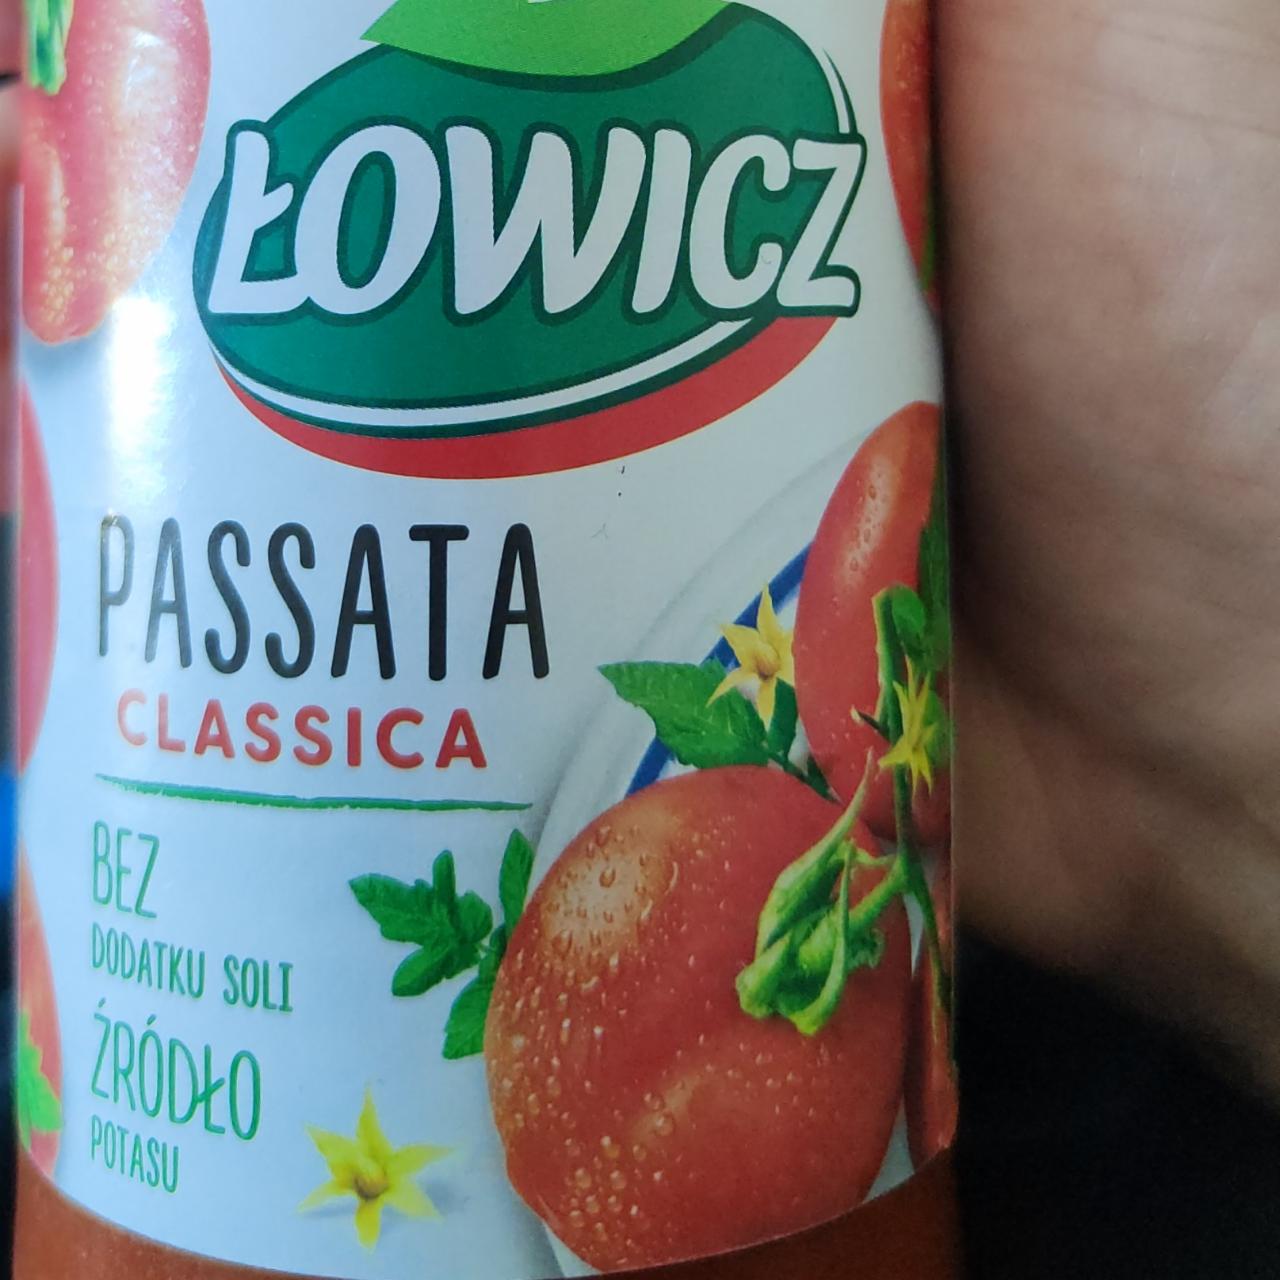 Zdjęcia - Passata Classica Łowicz